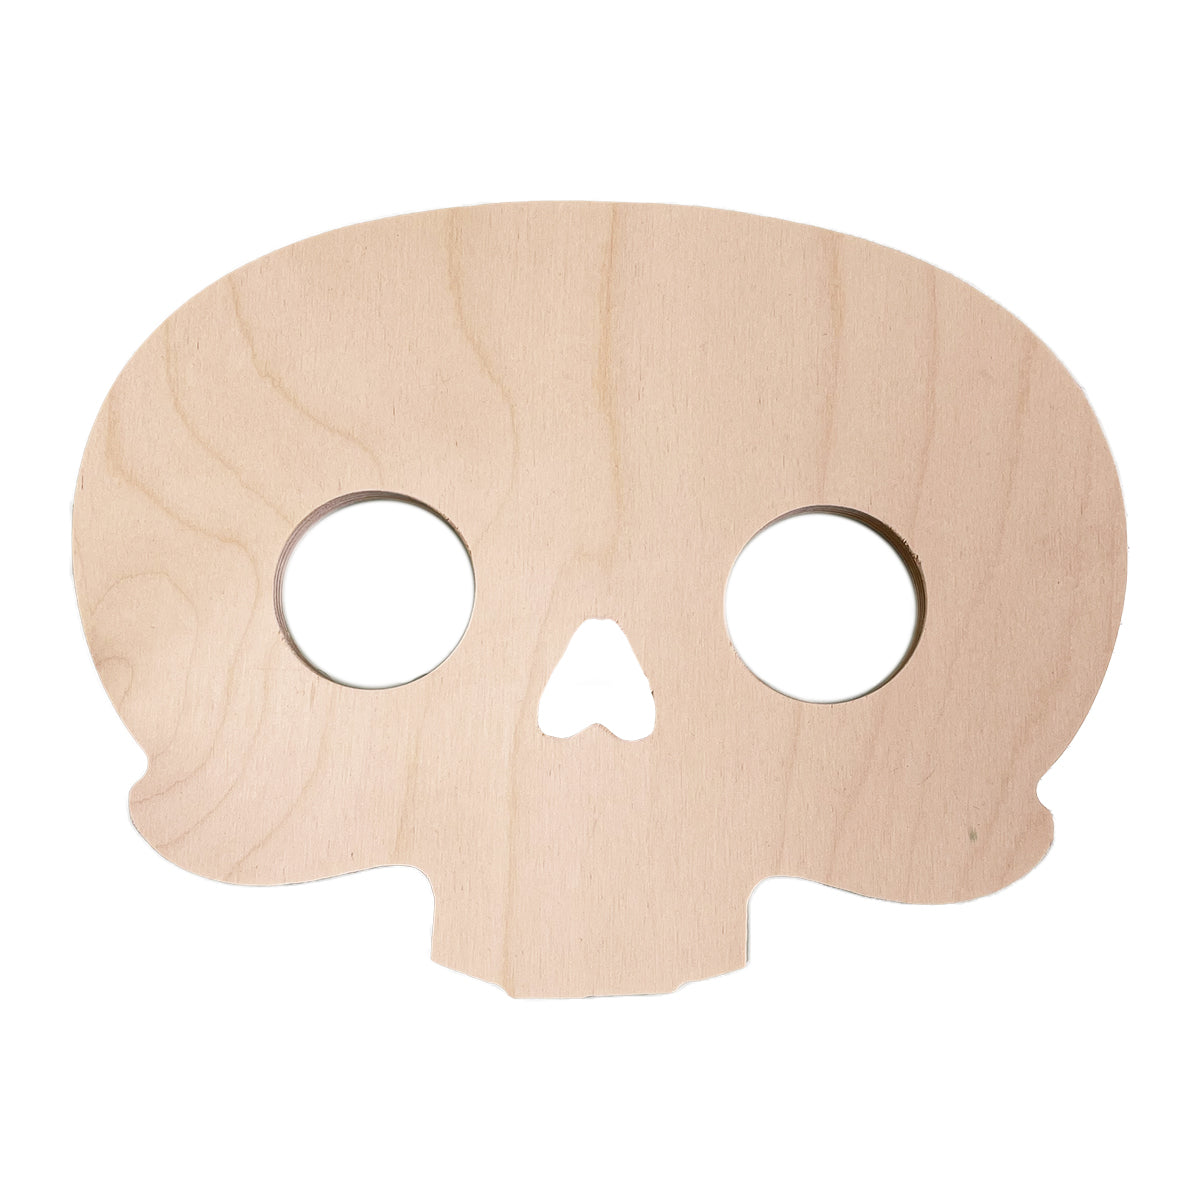 Trekell Round Skull Panel - Wooden Painting Halloween Canvas - Trekell Art Supplies